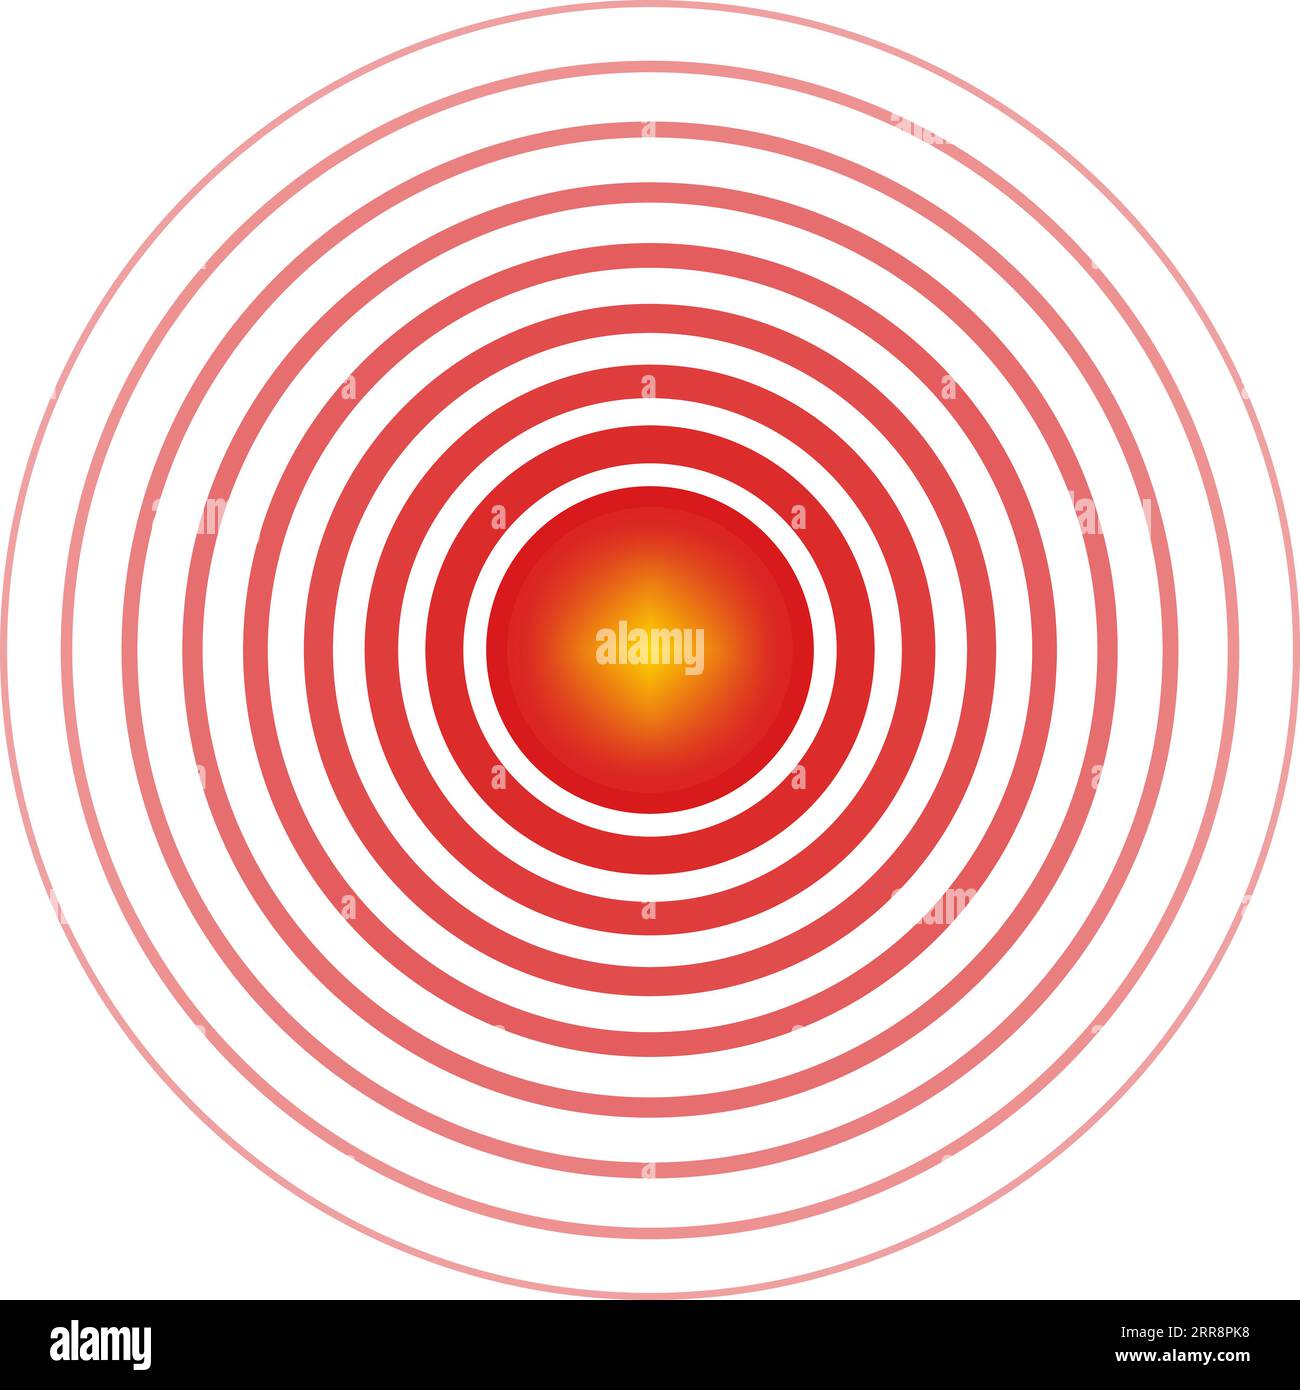 Zeichen-Symbol Epizentrum Schmerzlokalisation rote Kreise mit gelber Mitte Stock Vektor